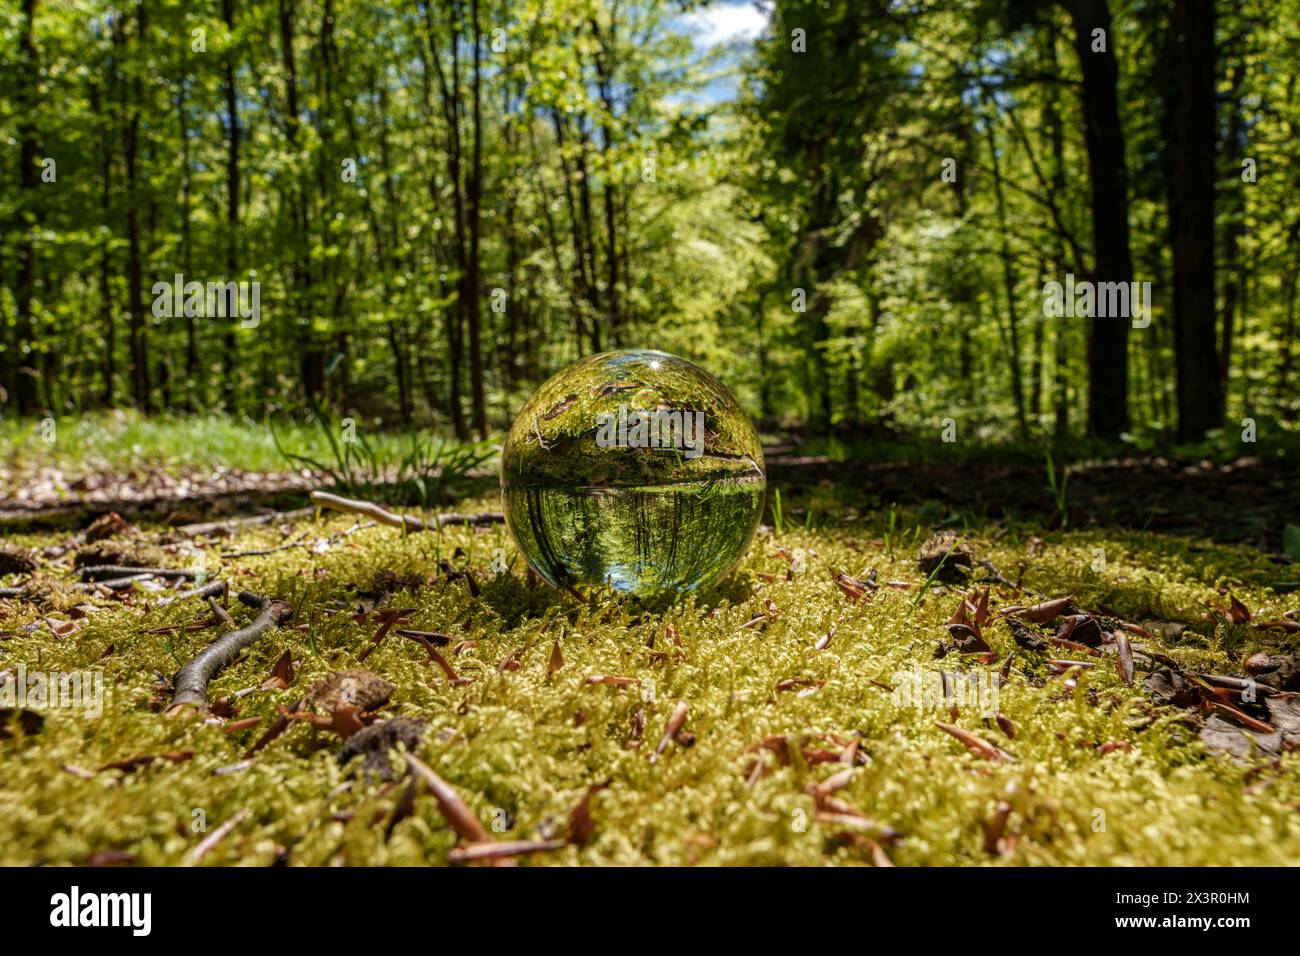 Une boule de verre repose sur le sol de la forêt entourée d'arbres, de plantes et d'herbe. Le paysage naturel des plantes terrestres et des arbres à feuilles caduques cre Banque D'Images